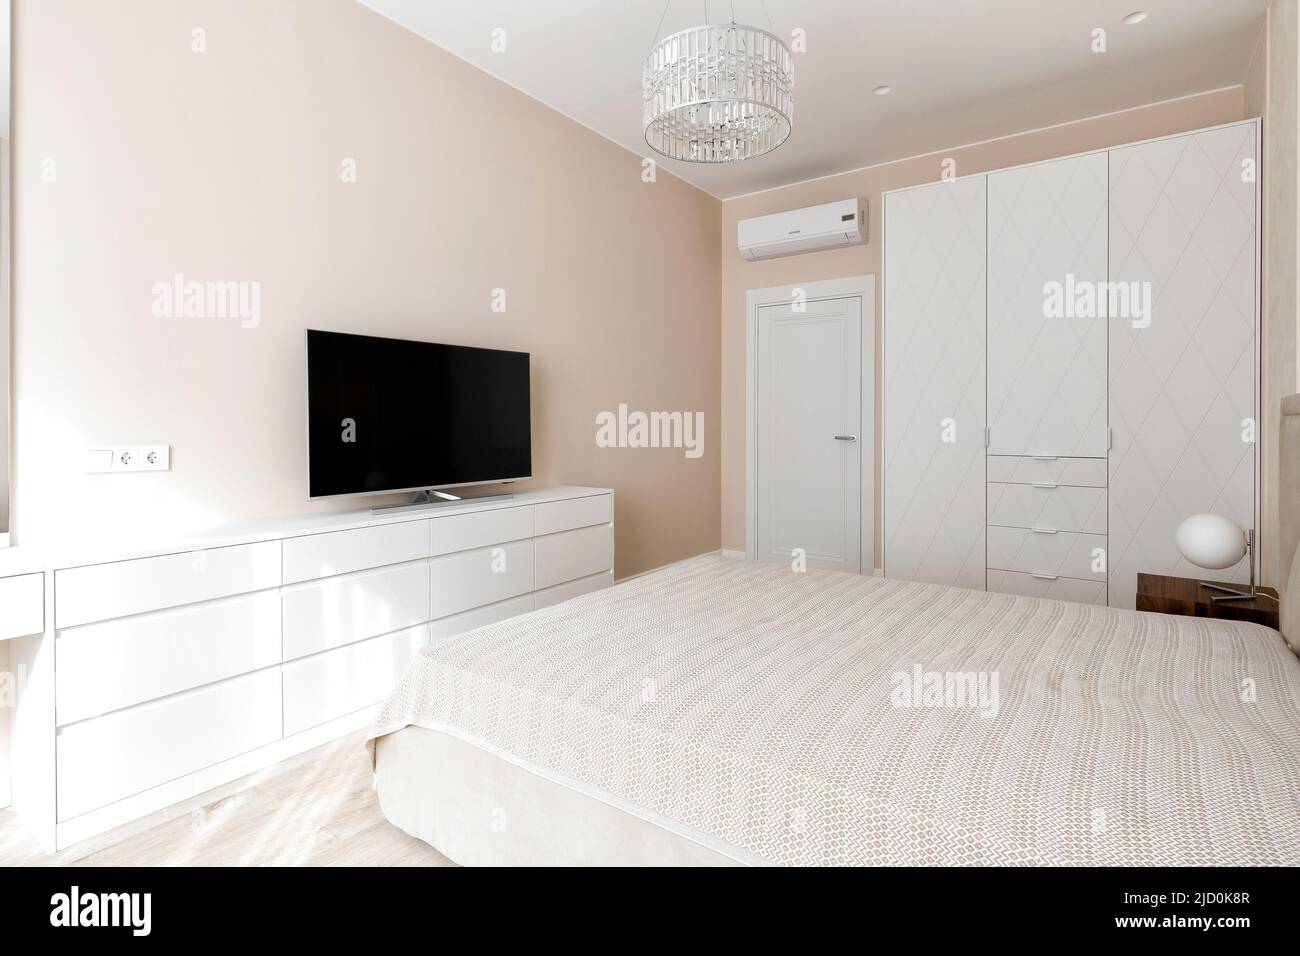 Photographie d'une chambre avec différents éclairages Banque D'Images